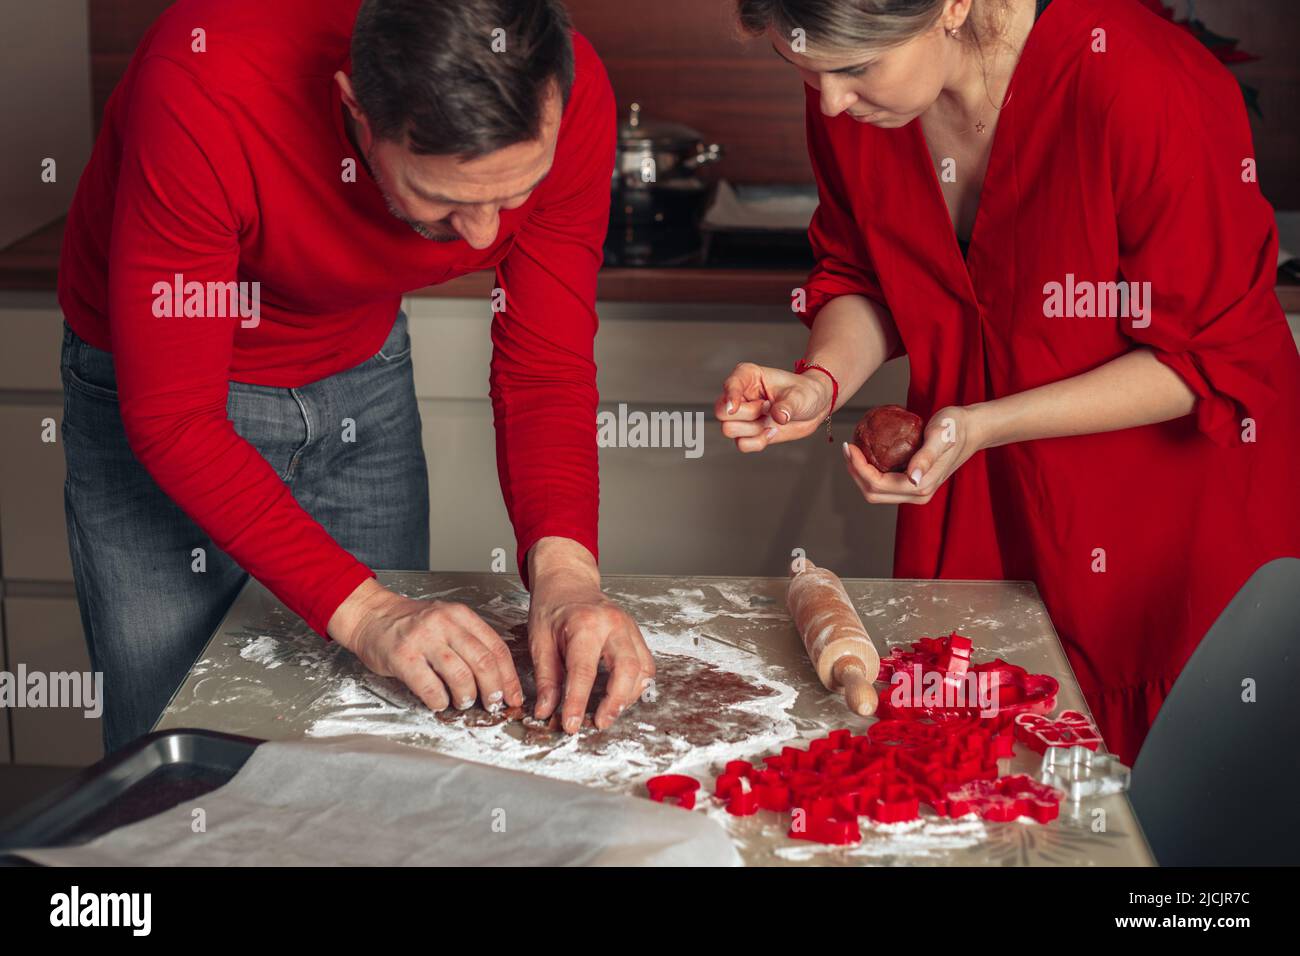 Das junge Paar lehnte sich über den Tisch, um Kekse zu schneiden. Weihnachten glückliche Momente, Mann und Frau kochen zu Hause. Teig auf dem Tisch. Gemütliche Küche zu Hause und Glück Stockfoto